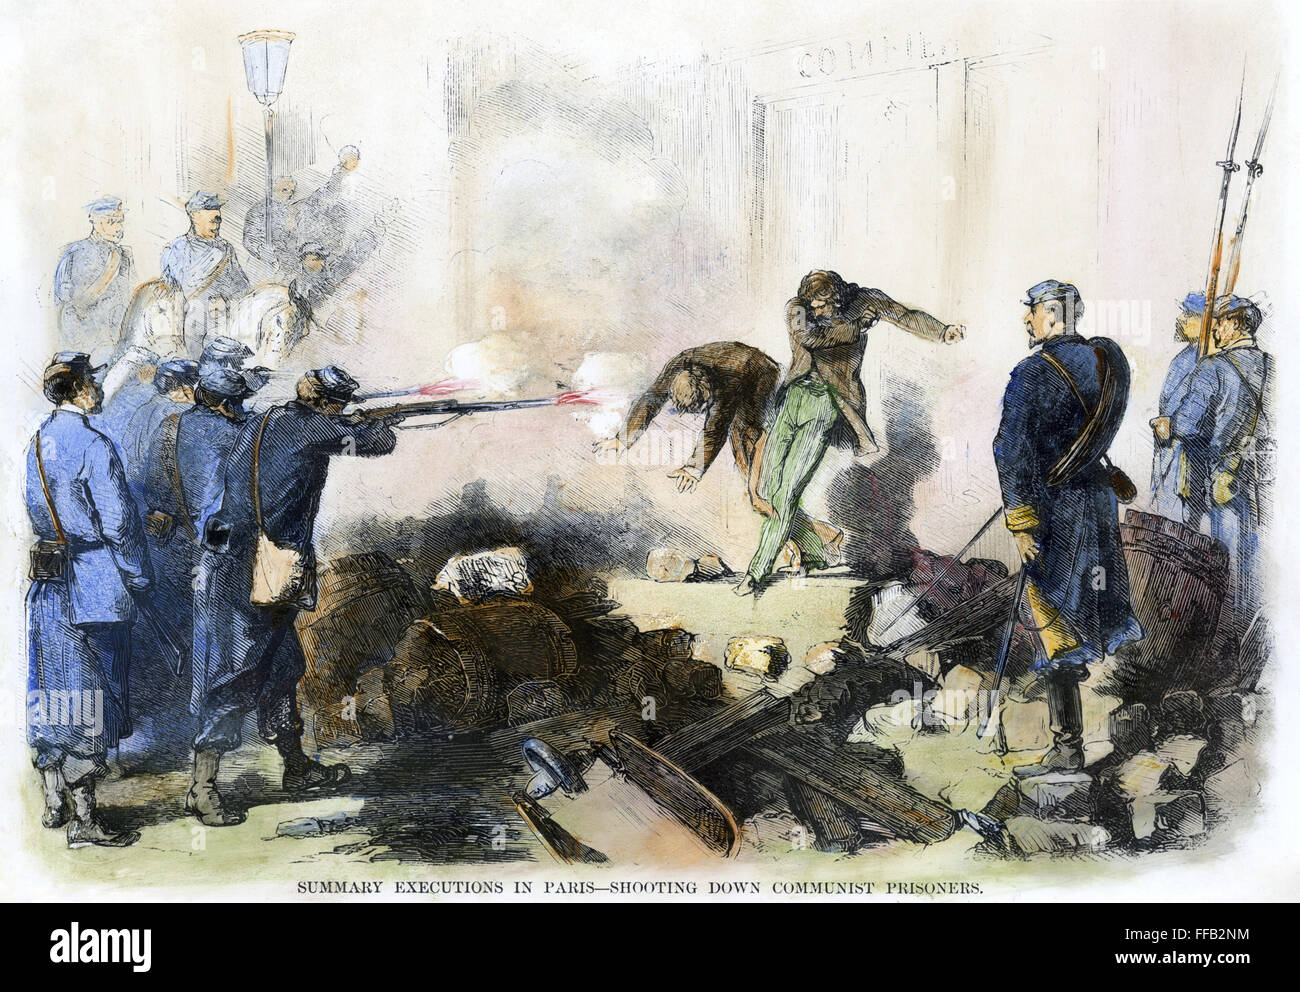 COMMUNE DE PARIS, 1871. /N'Sommaire exécutions dans Paris. Abattant des prisonniers communistes." gravure de couleur à partir d'un journal américain contemporain. Banque D'Images